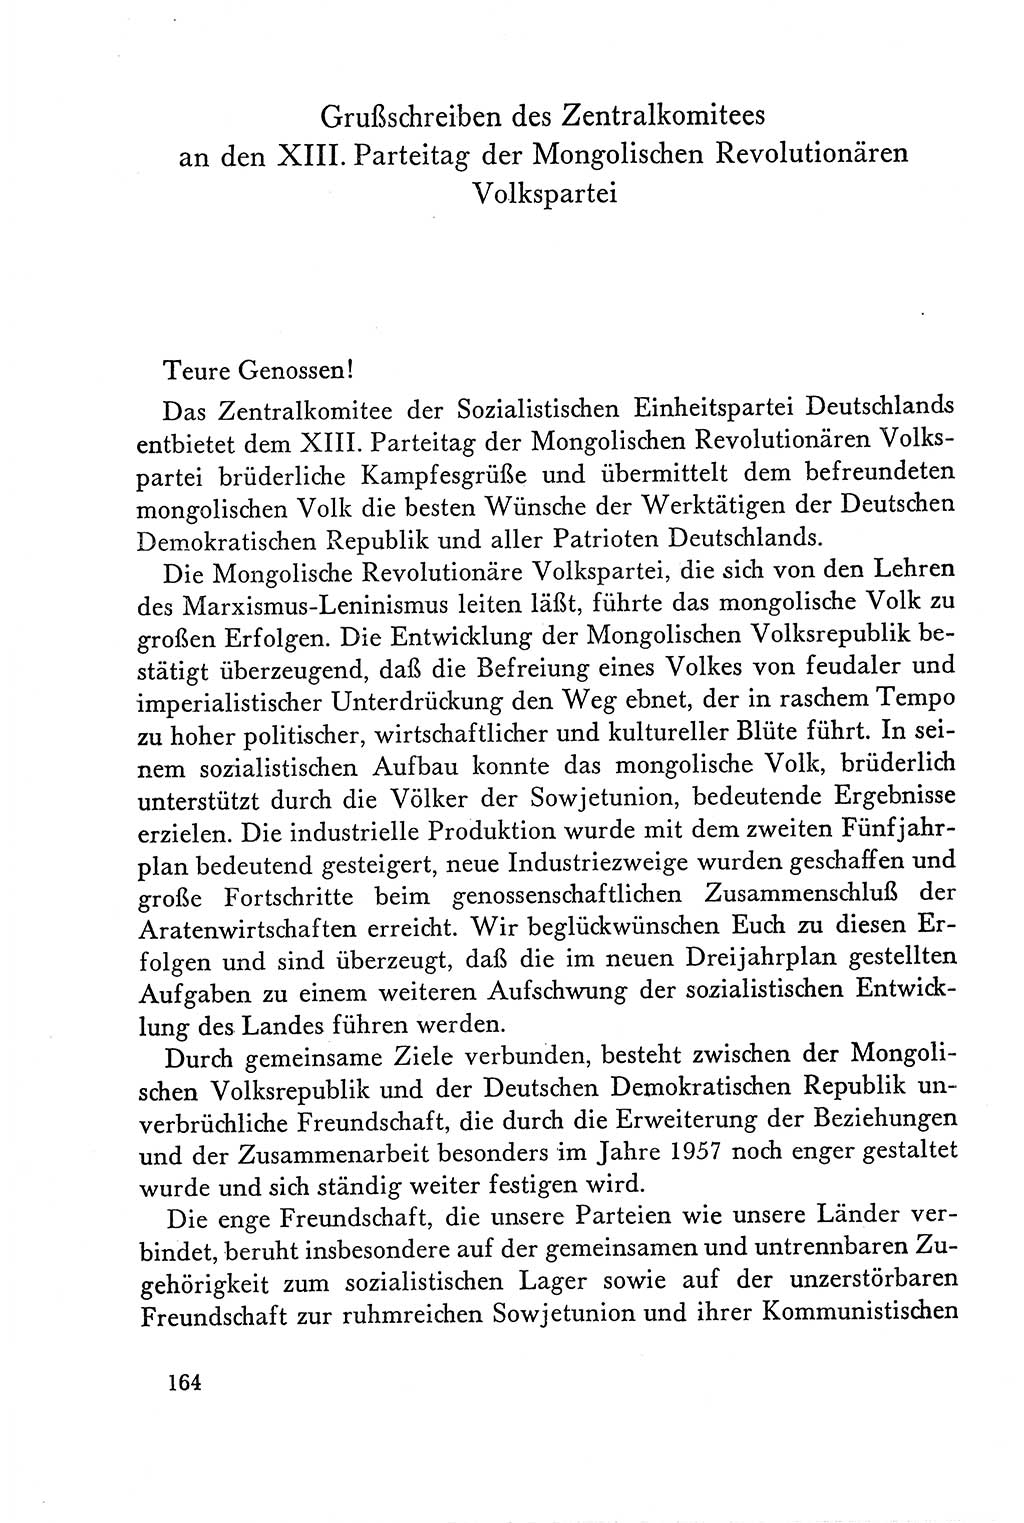 Dokumente der Sozialistischen Einheitspartei Deutschlands (SED) [Deutsche Demokratische Republik (DDR)] 1958-1959, Seite 164 (Dok. SED DDR 1958-1959, S. 164)